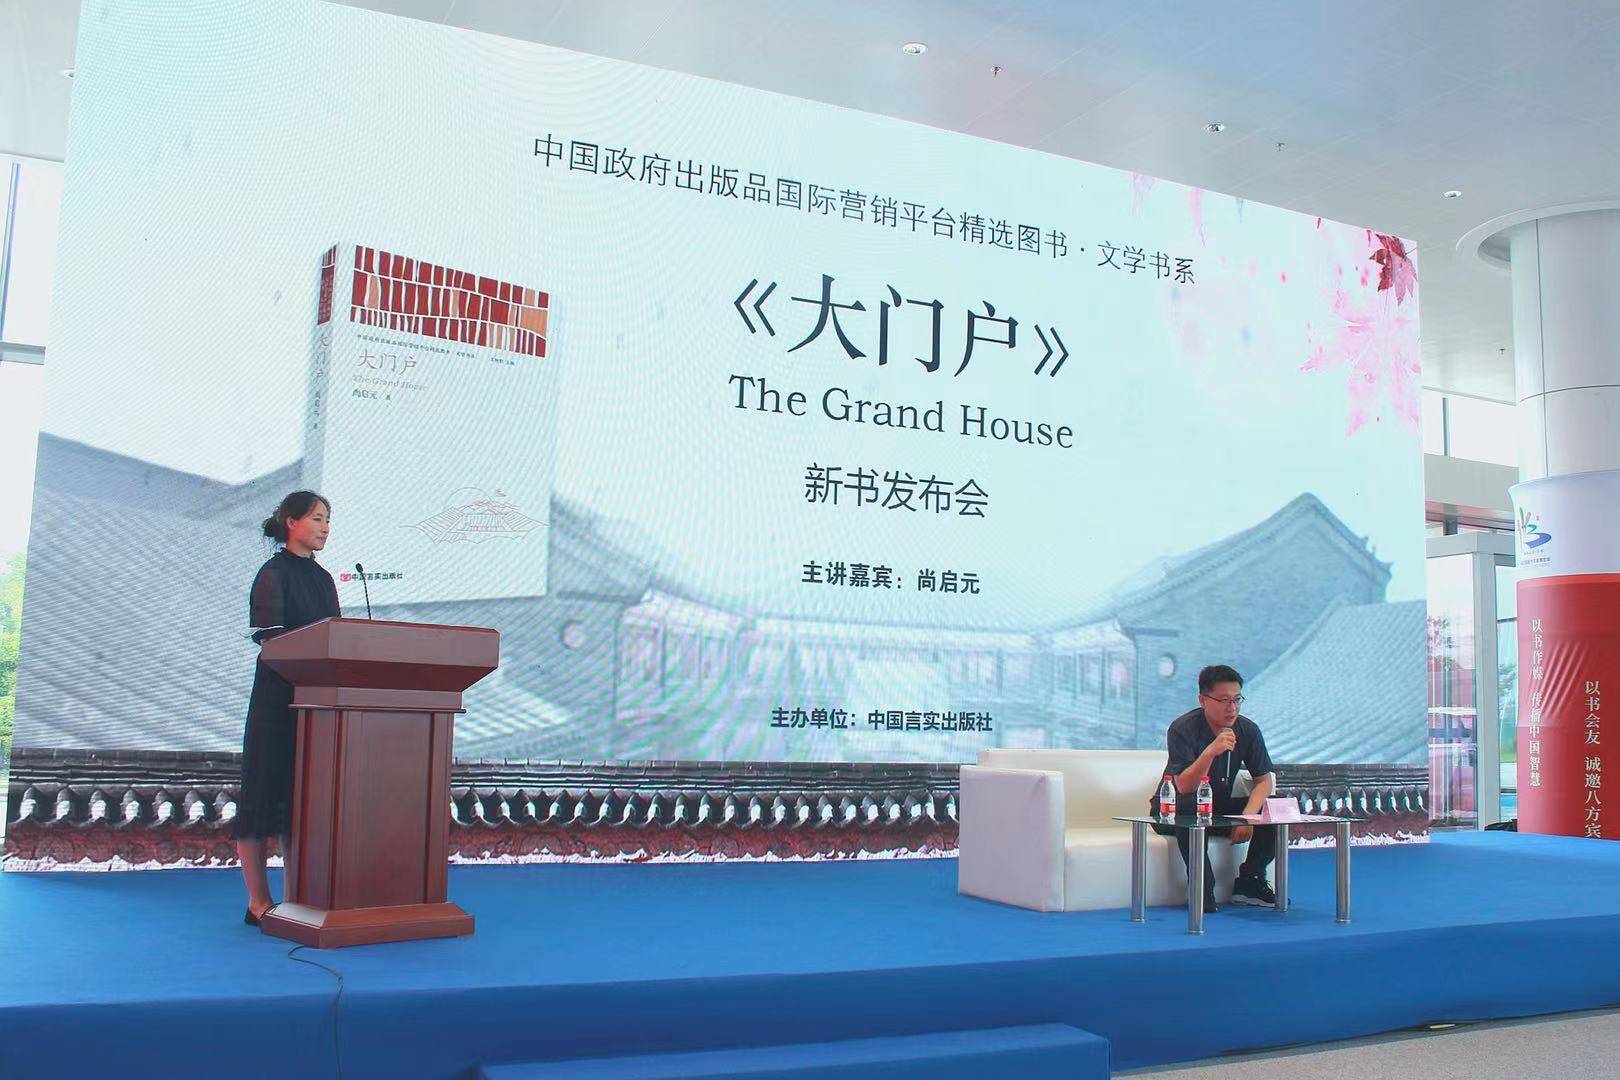 7月16日下午,中国言实出版社展区举办了《大门户》新书发布会